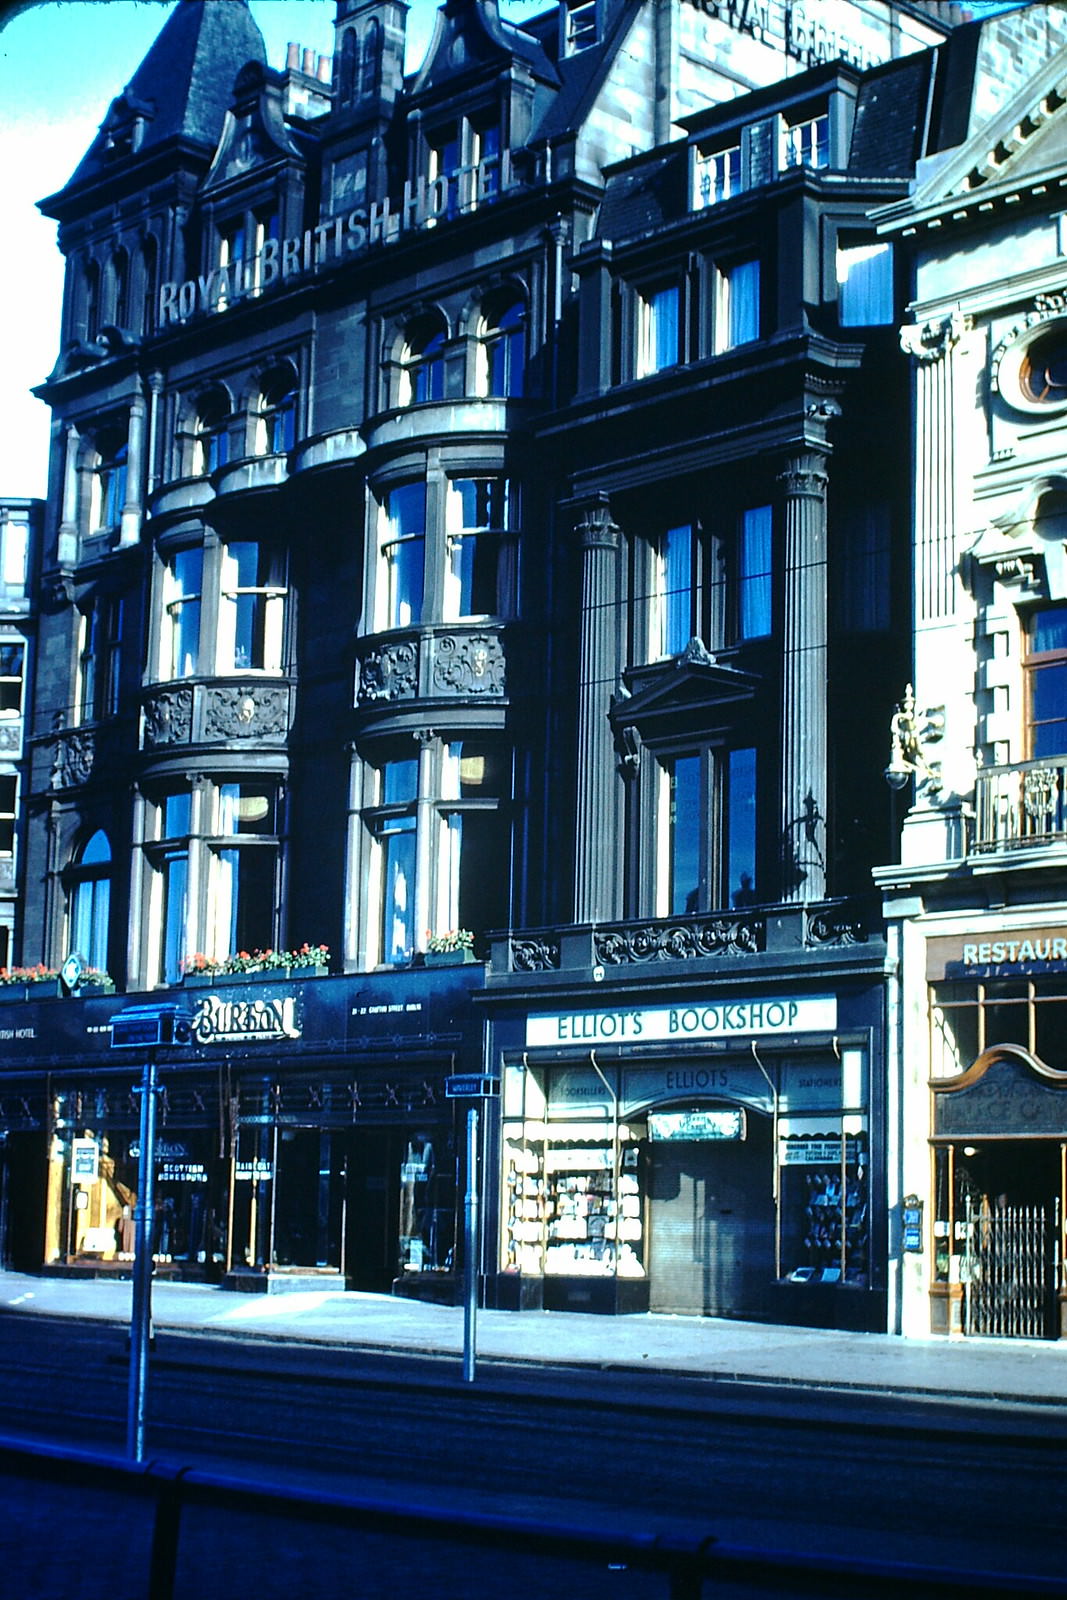 Hotel Royal British-Edinburgh, 1949.